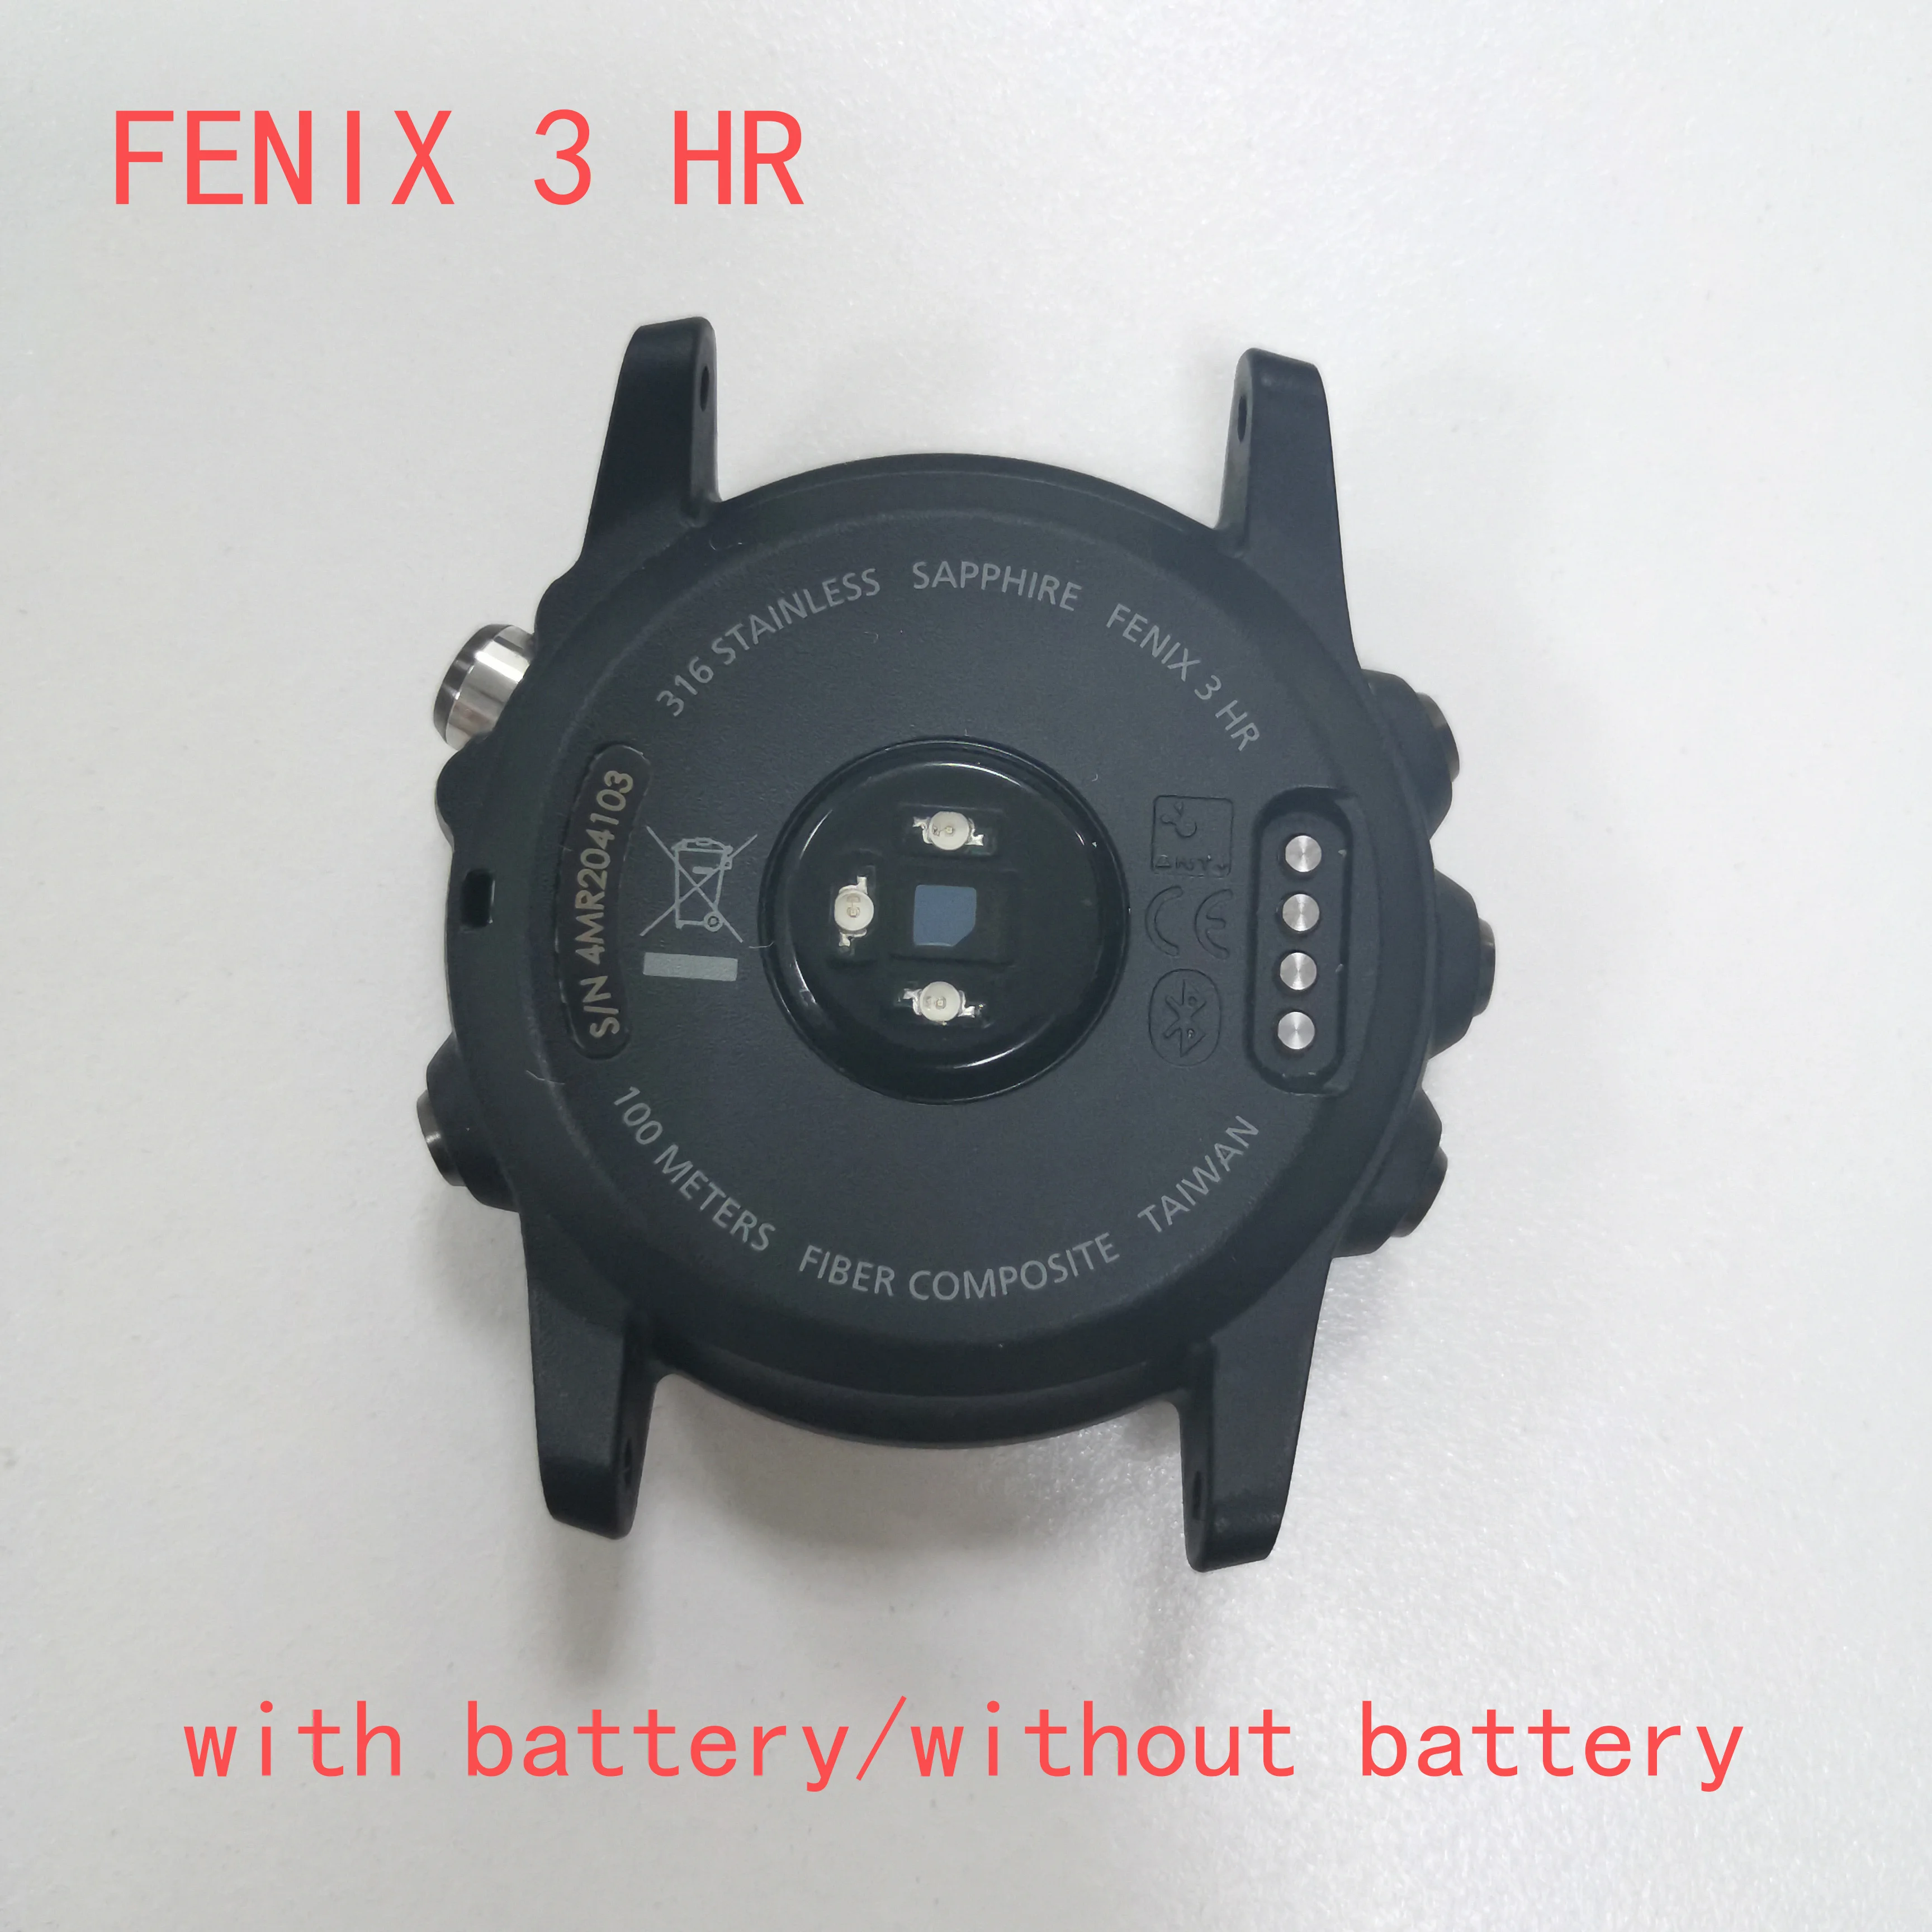 

Пластиковая Задняя крышка для Garmin Fenix 3 HR с кнопкой, литий-ионный аккумулятор 361-00034-02, многофункциональная Нижняя рамка, высокое качество